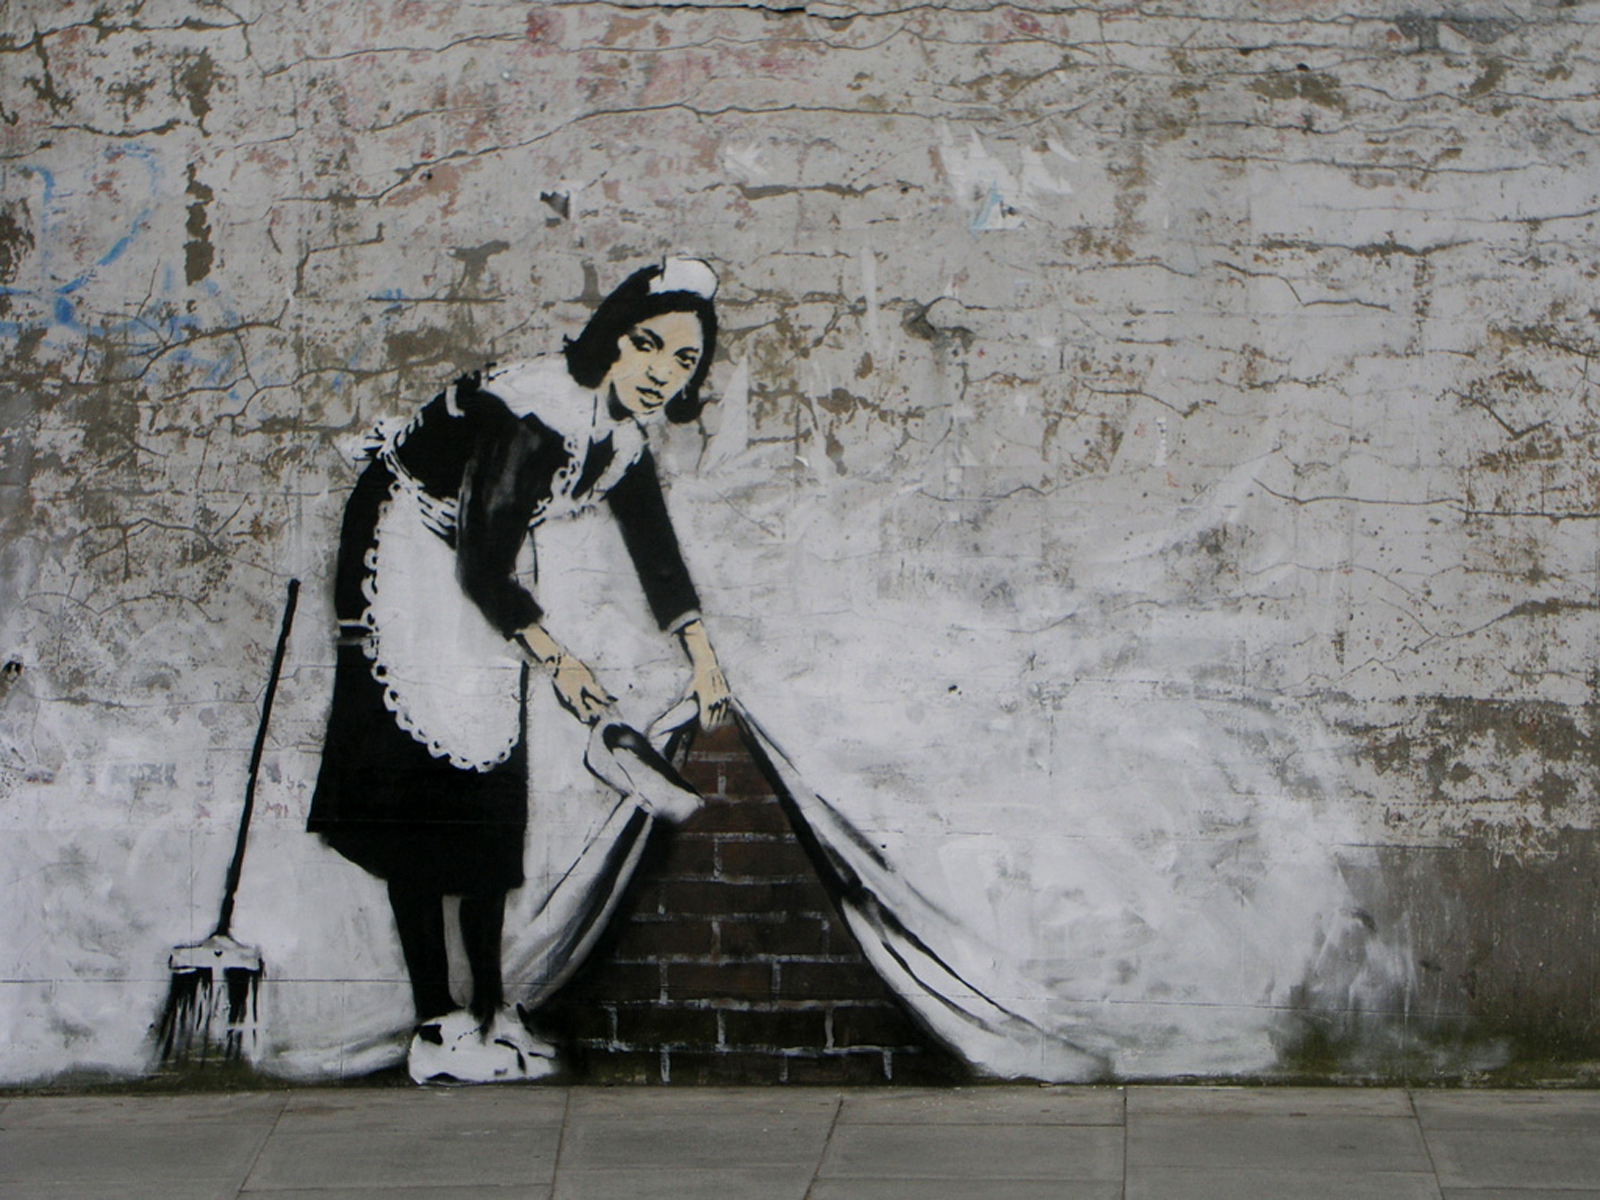 graffiti, banksy, artistic images